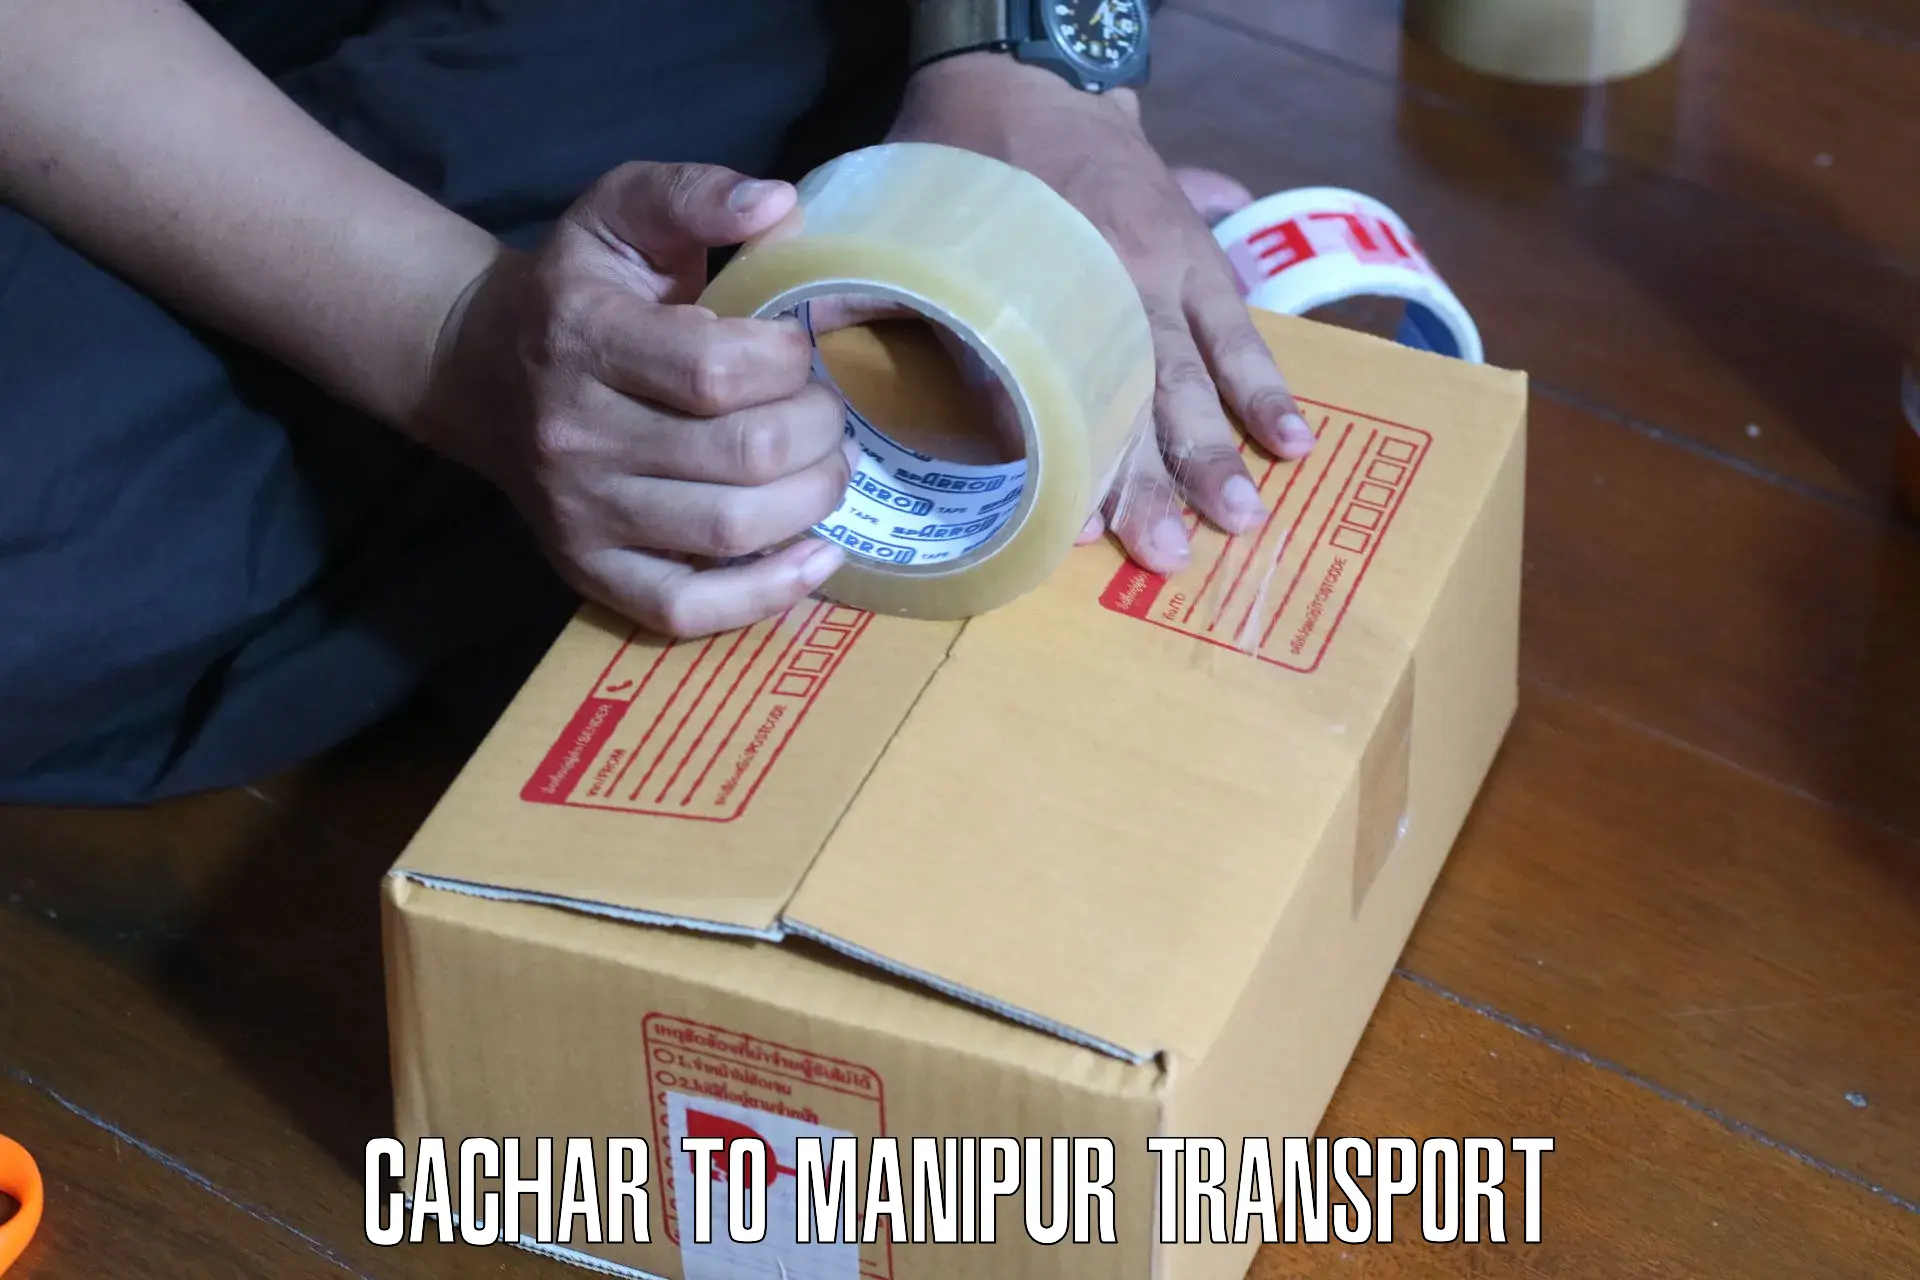 Furniture transport service Cachar to Churachandpur